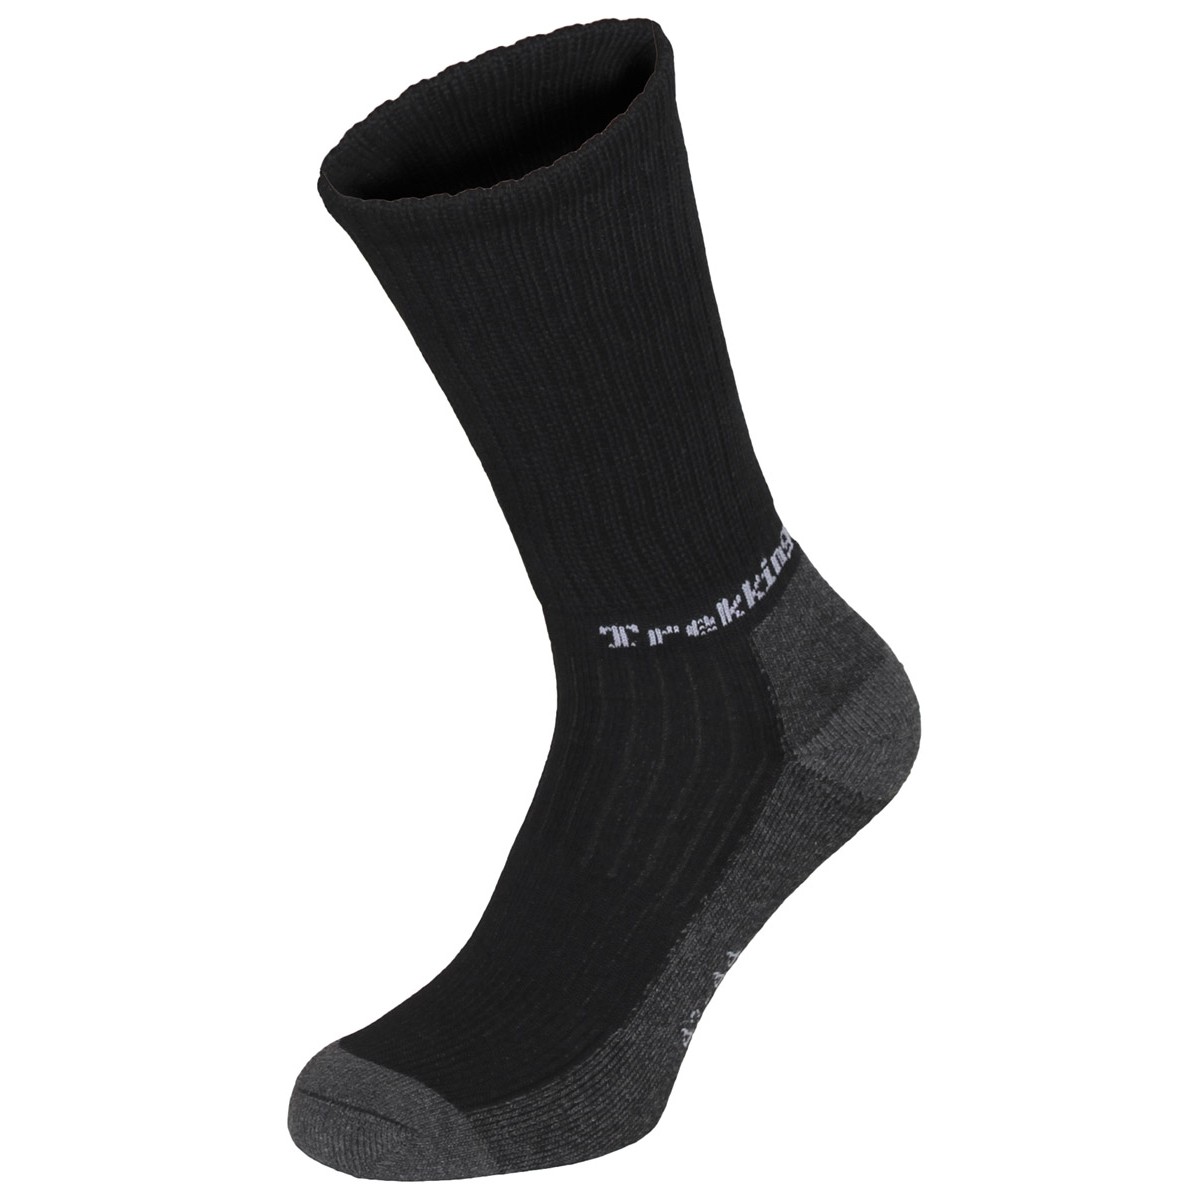 Ponožky trekingové Fox Lusen - černé, 45-47